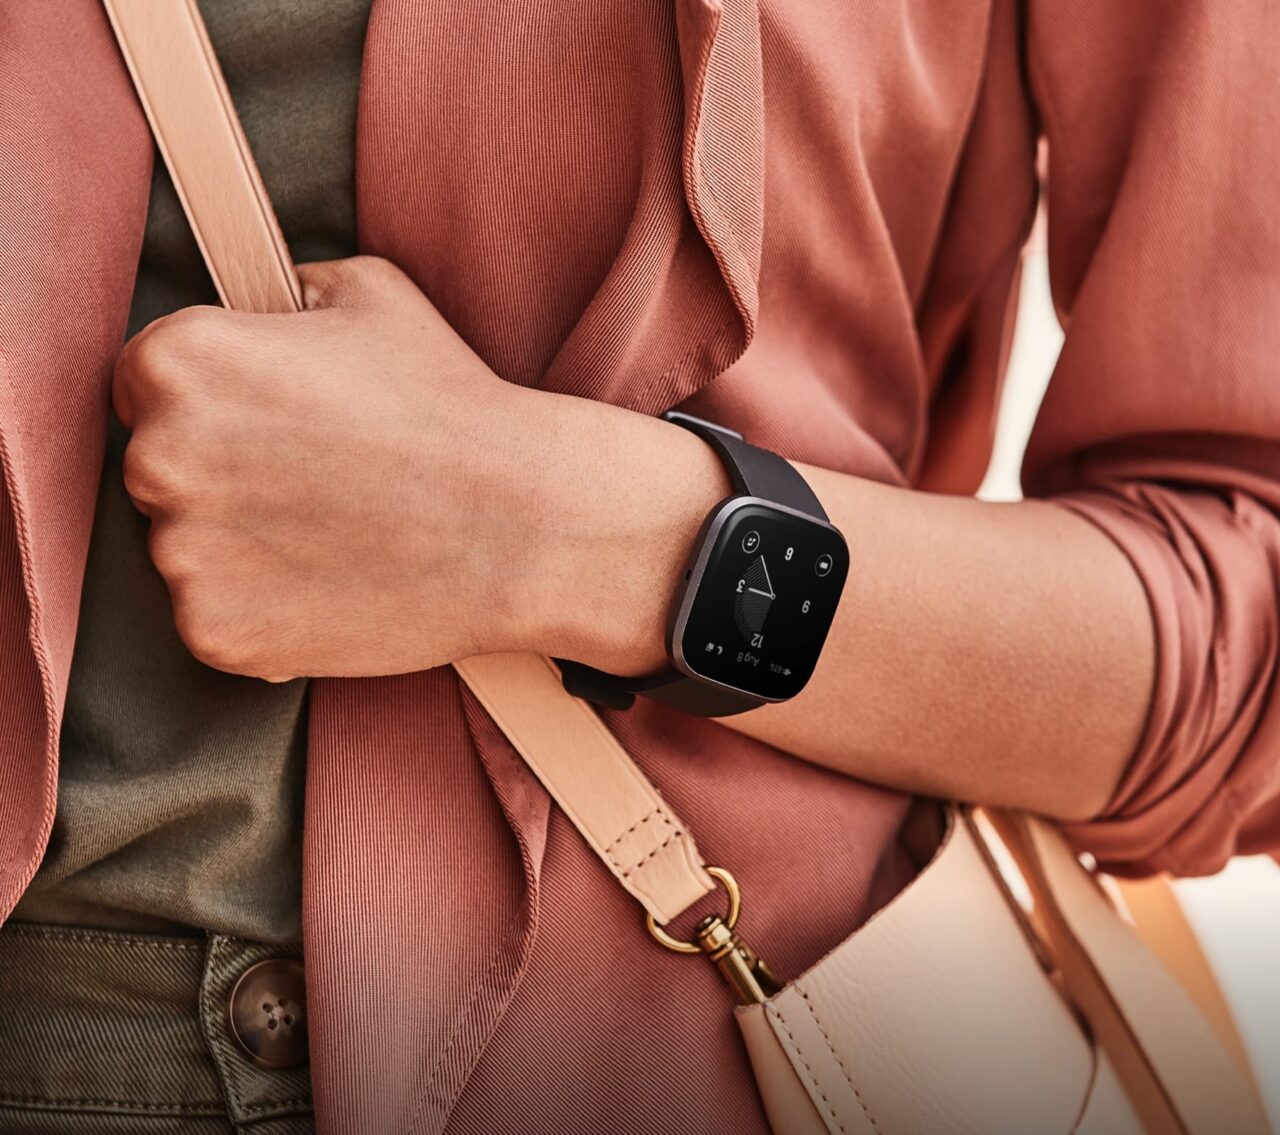 Opis obrazu: Osoba w czerwonawym płaszczu nosi czarny smartwatch na nadgarstku.